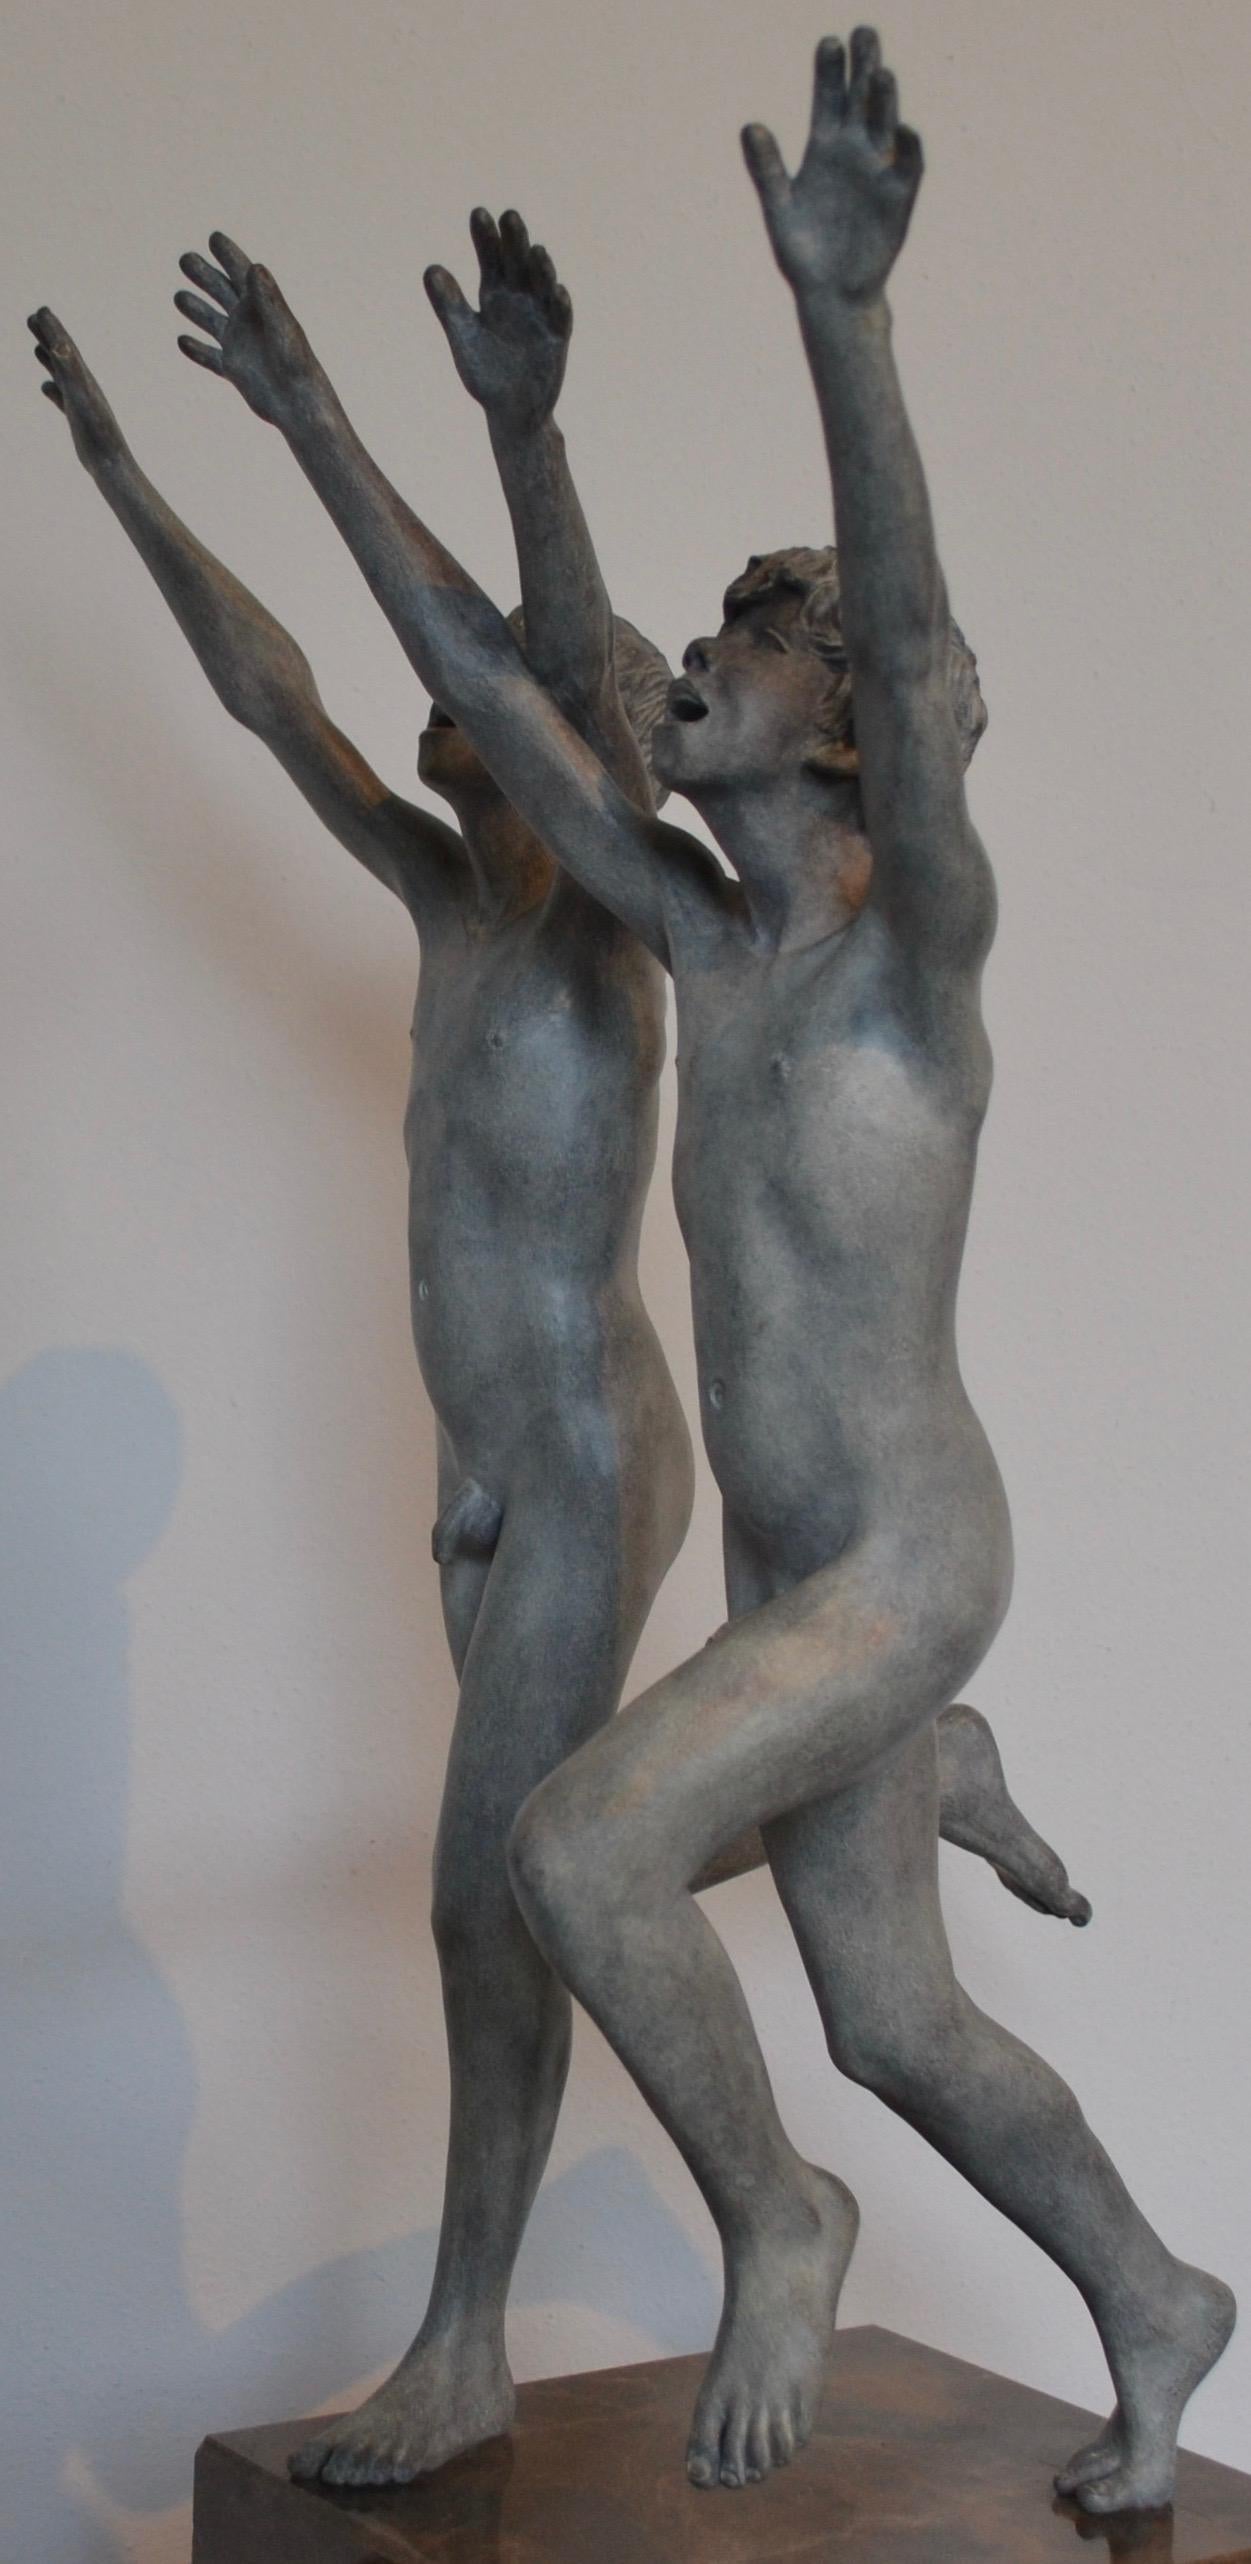 Cursus – zeitgenössische Bronzeskulptur zweier nackter laufender Jungen aus dem 21. Jahrhundert (Zeitgenössisch), Sculpture, von Wim van der Kant